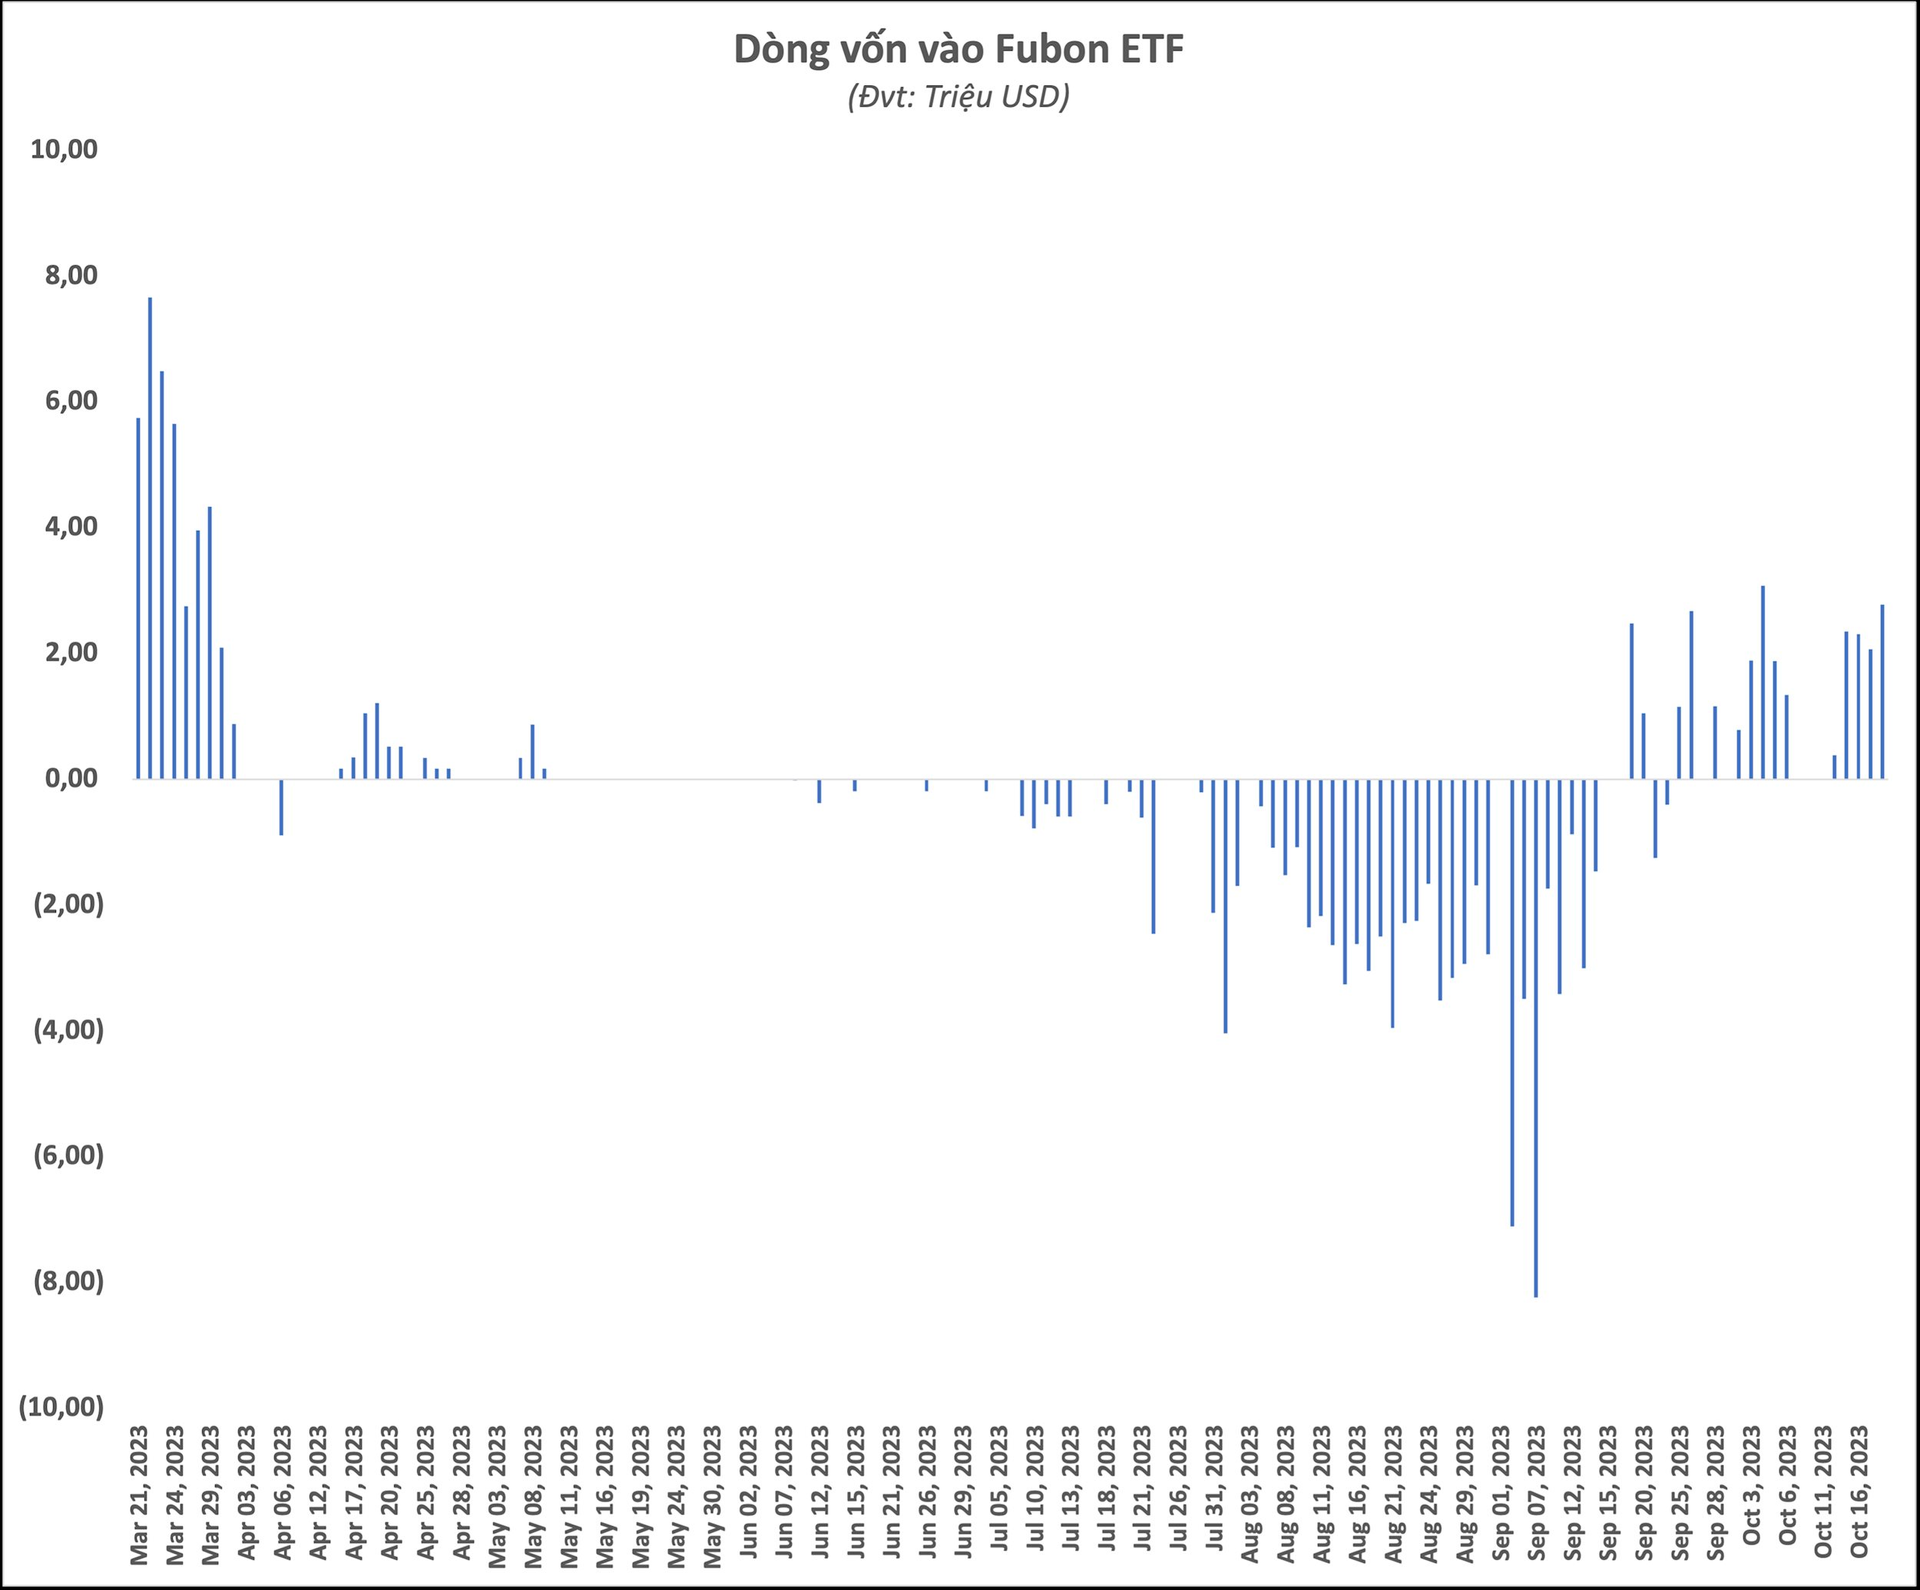 Chứng khoán Việt Nam giảm sâu, Fubon ETF đẩy mạnh “gom” hàng, mua ròng 200 tỷ đồng chỉ trong 3 phiên - Ảnh 1.